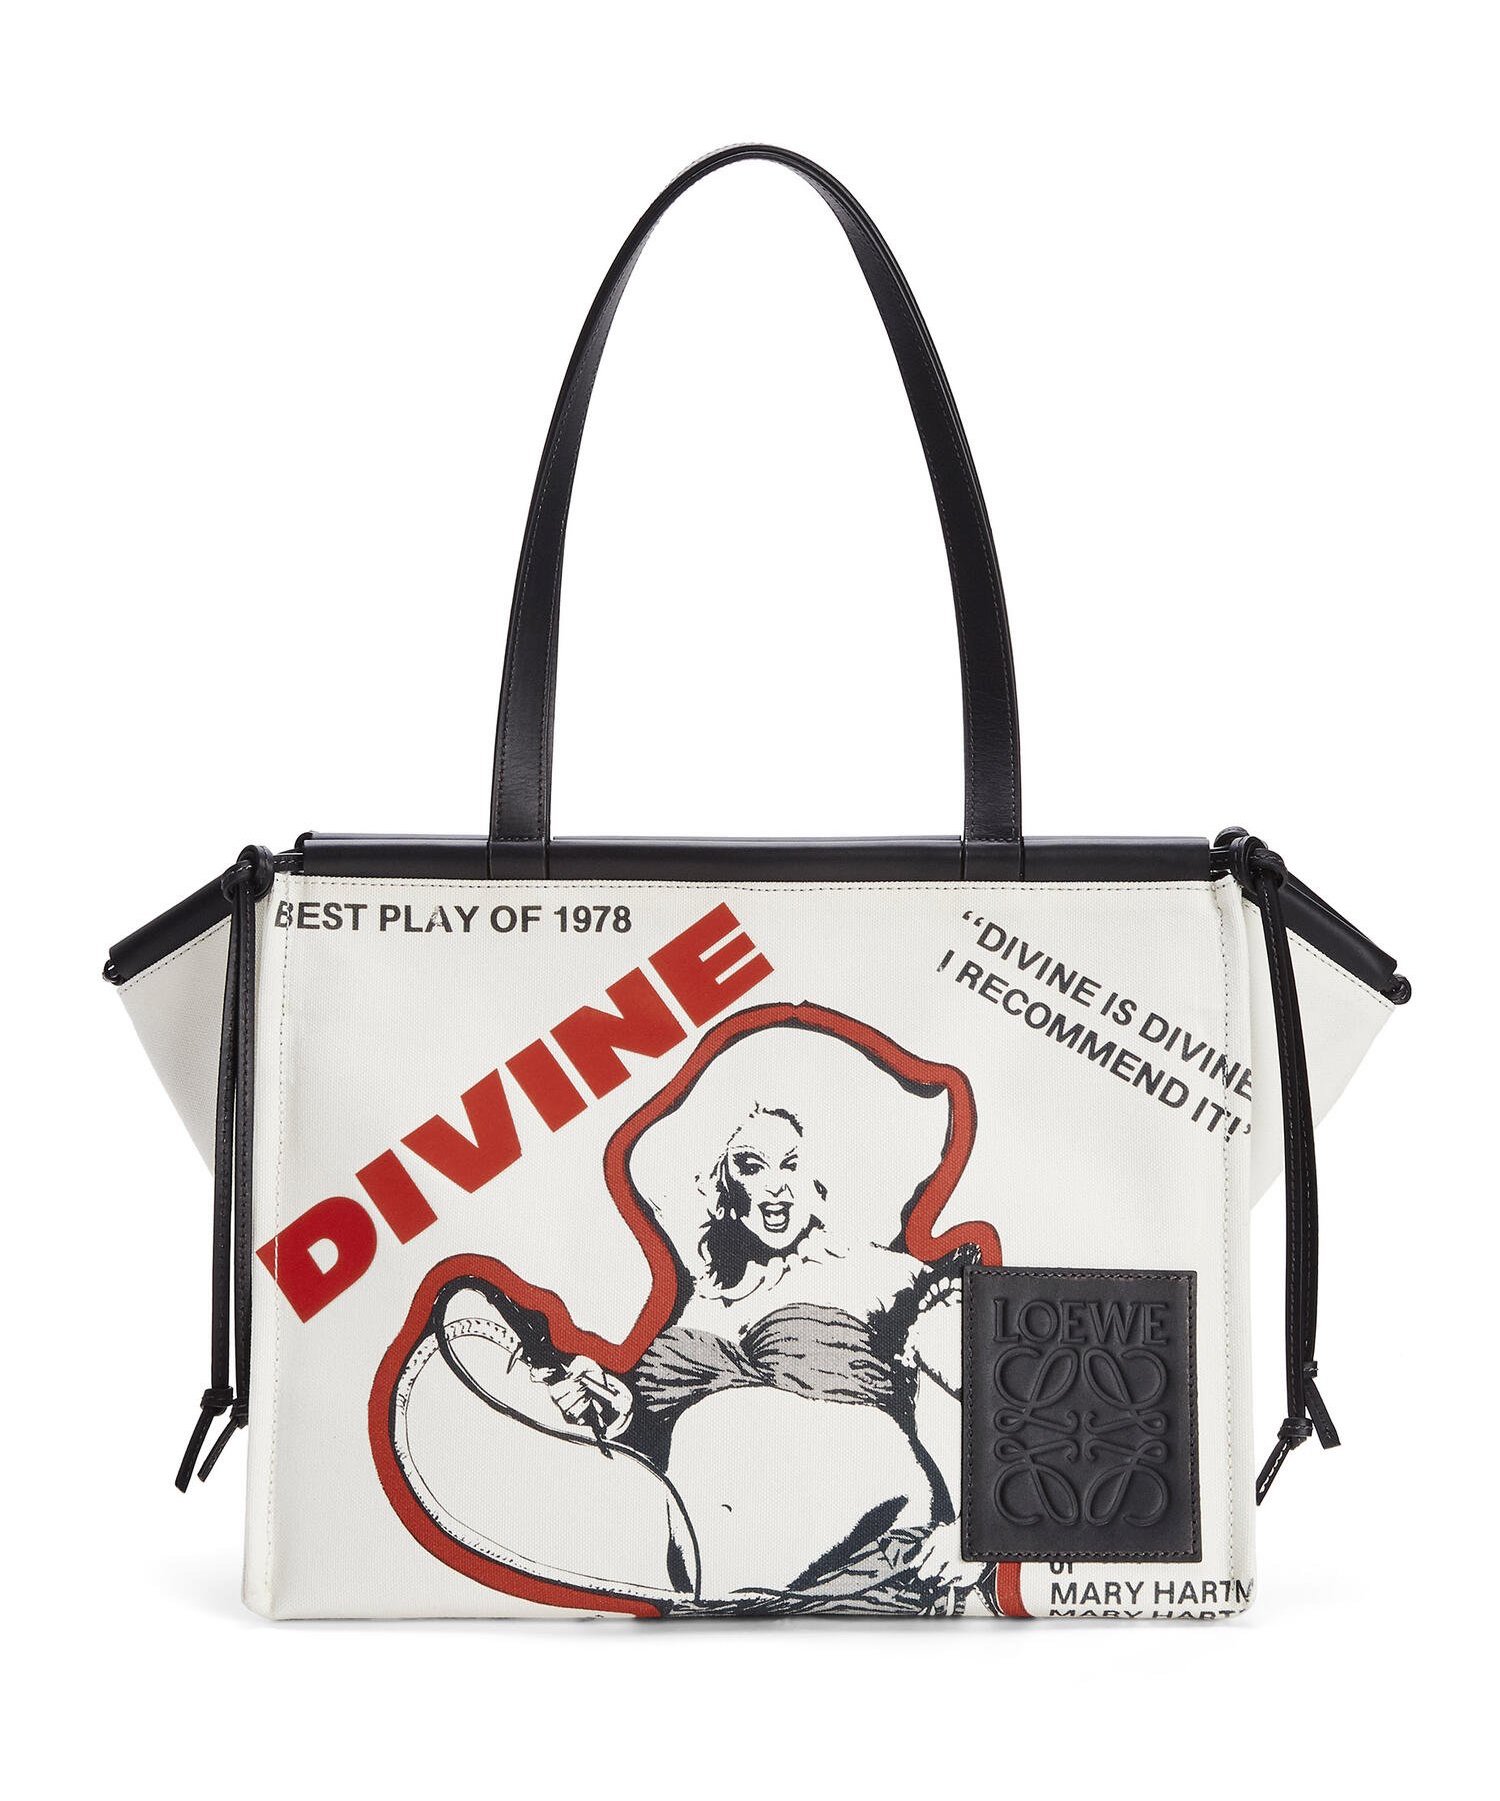 Loewe's new Pride campaign honours Divine's legacy